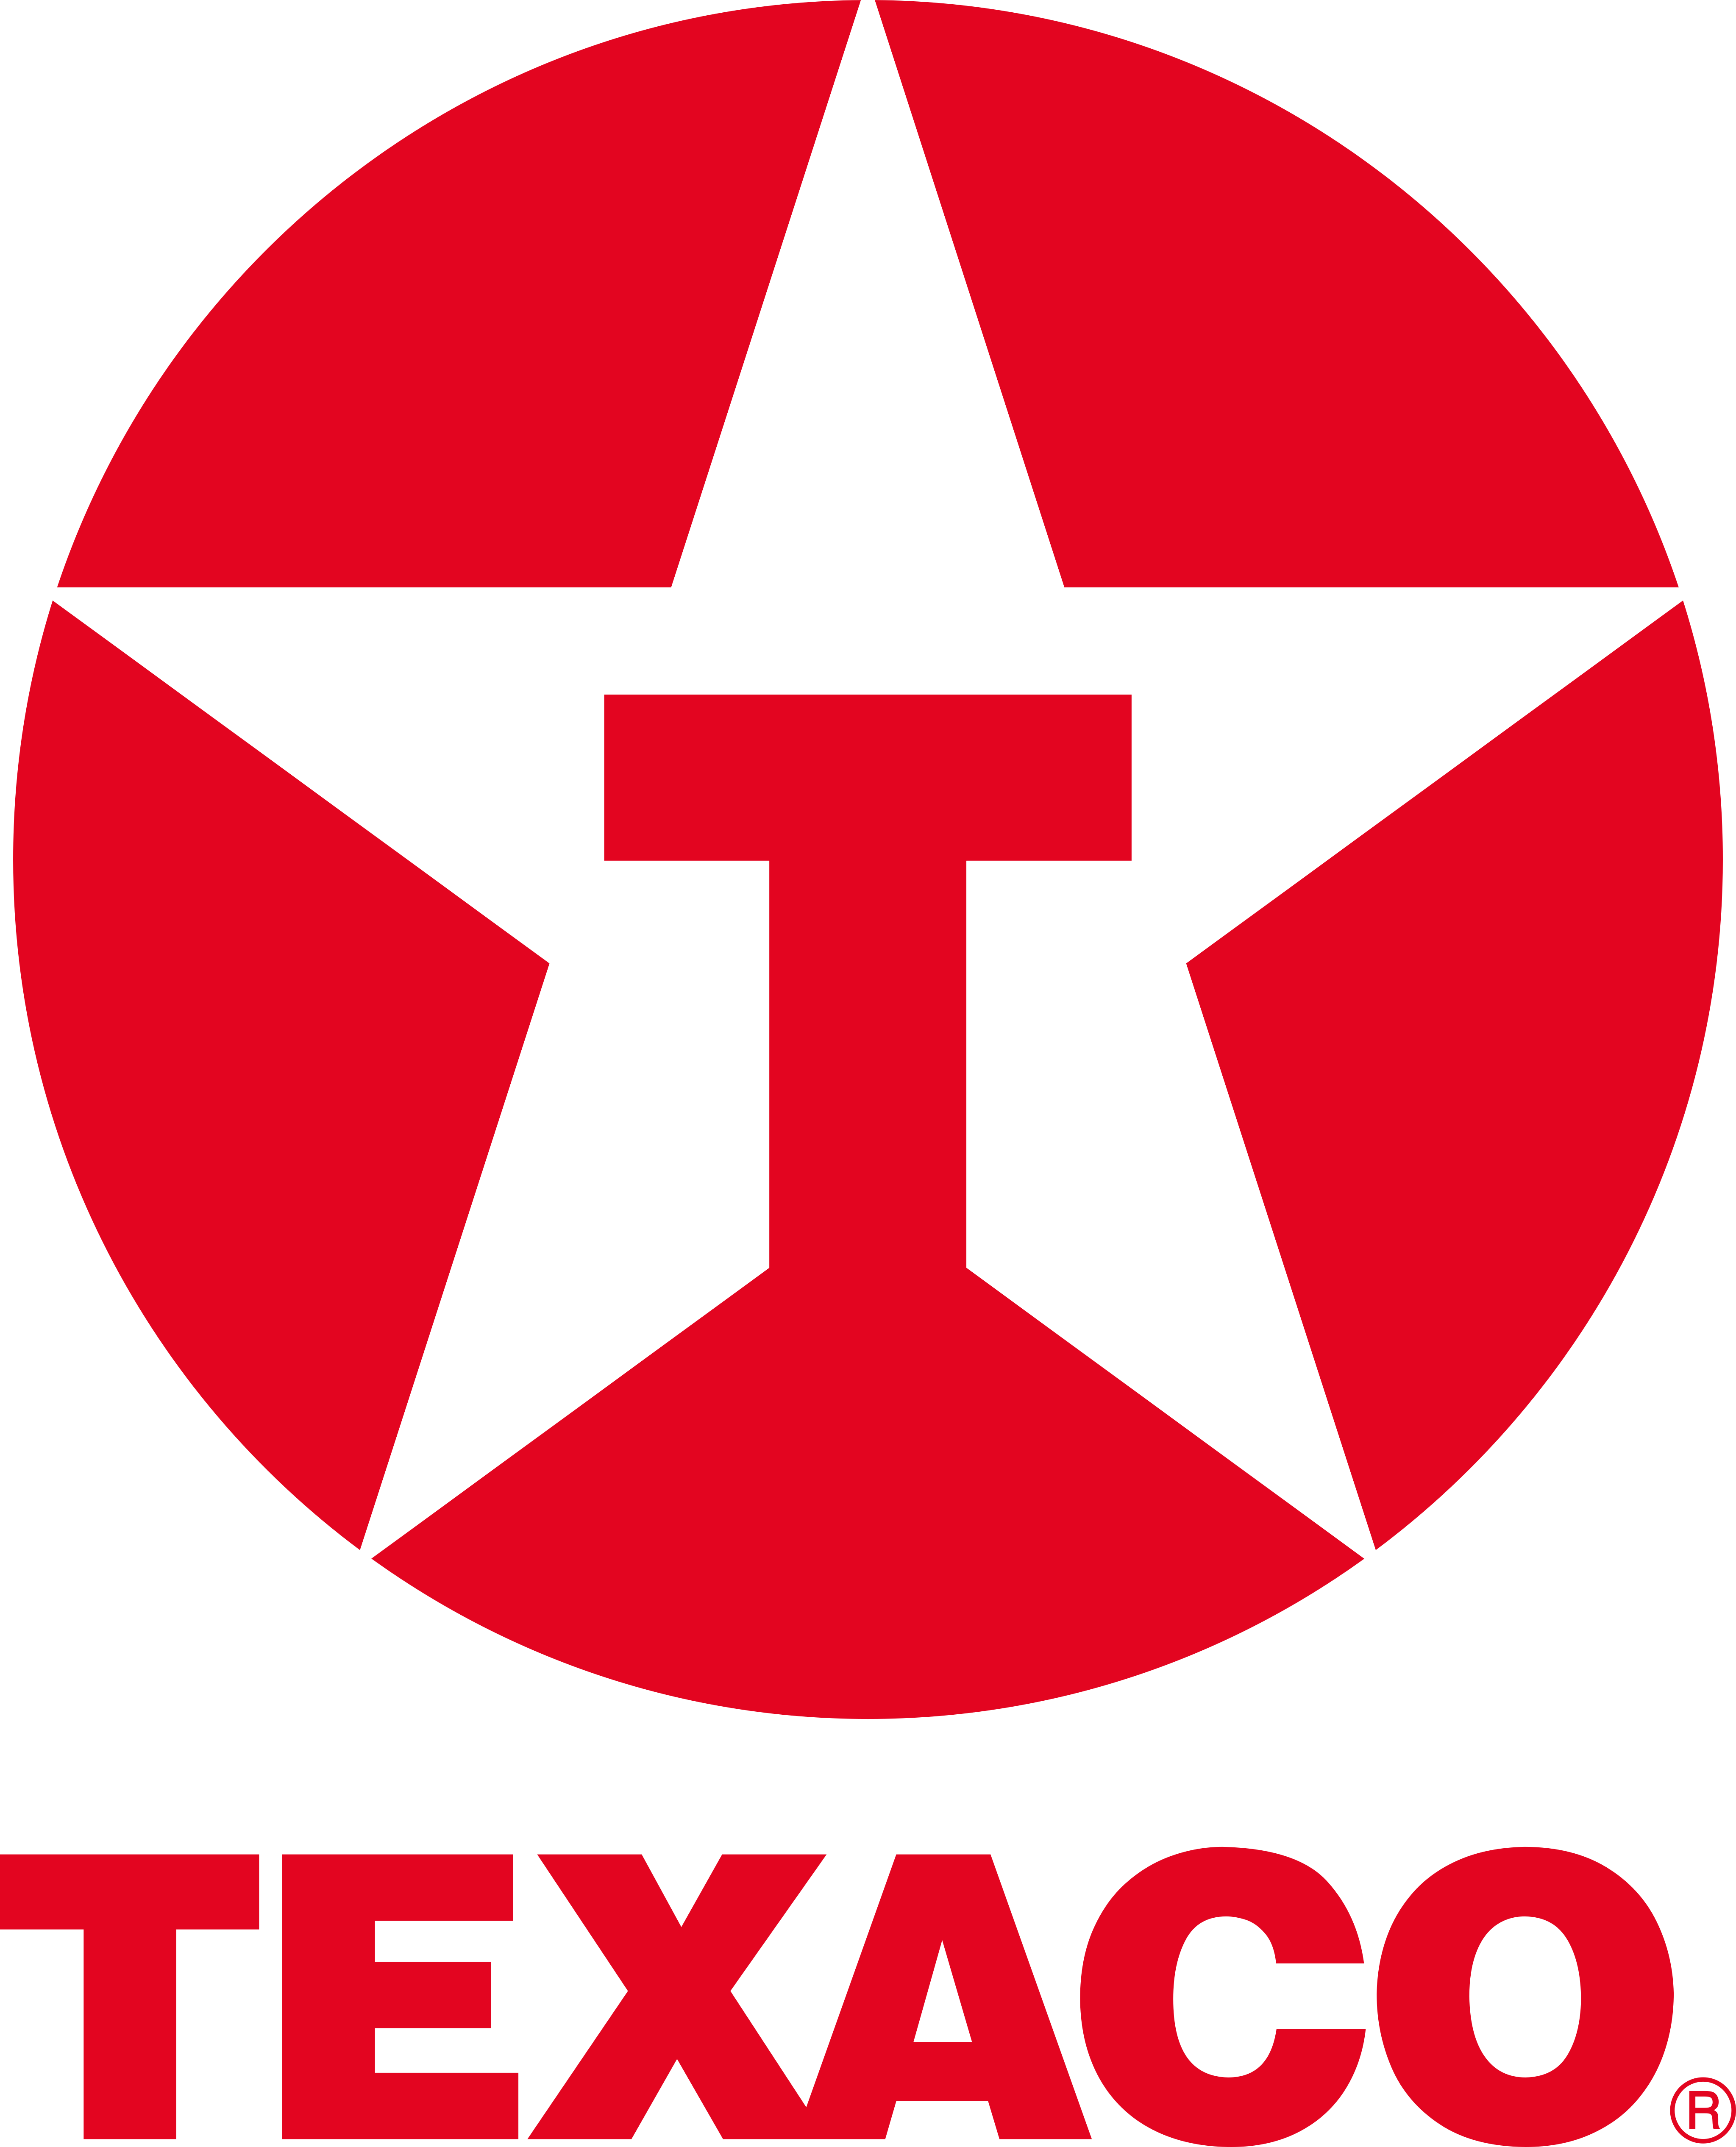 texaco logo 1 - Texaco Logo